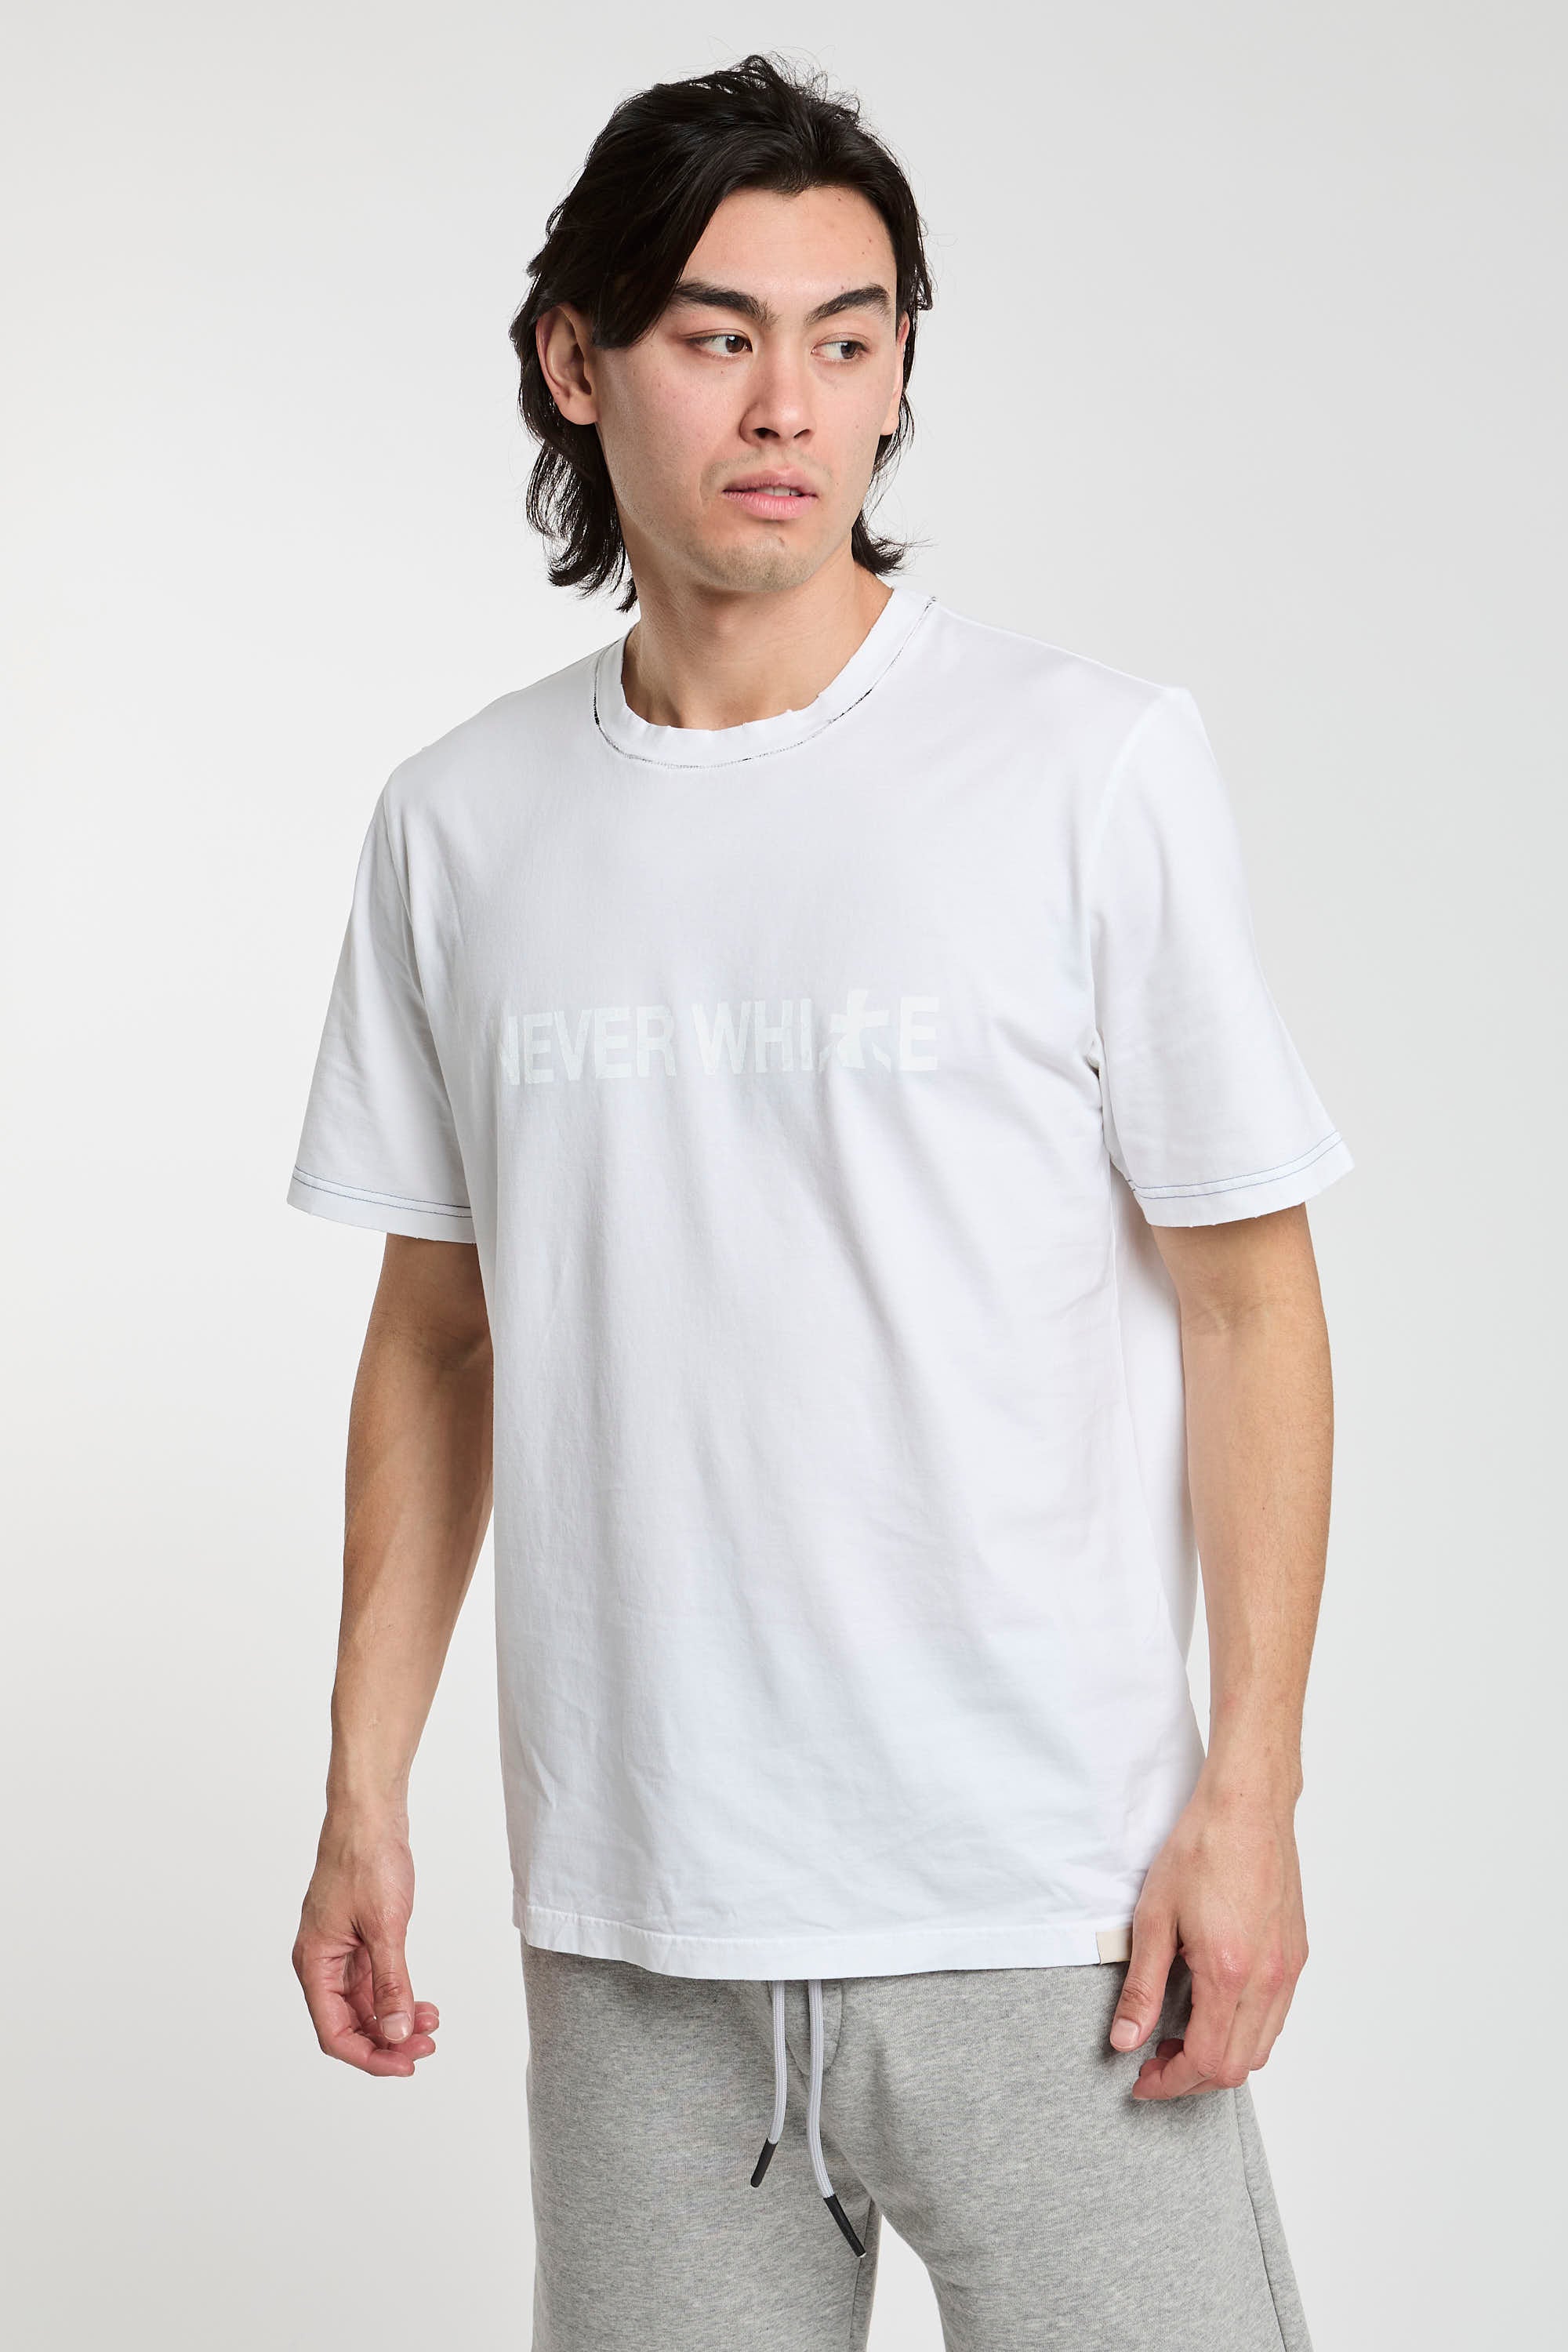 Premiata T-Shirt 'Never White' in White Cotton-3